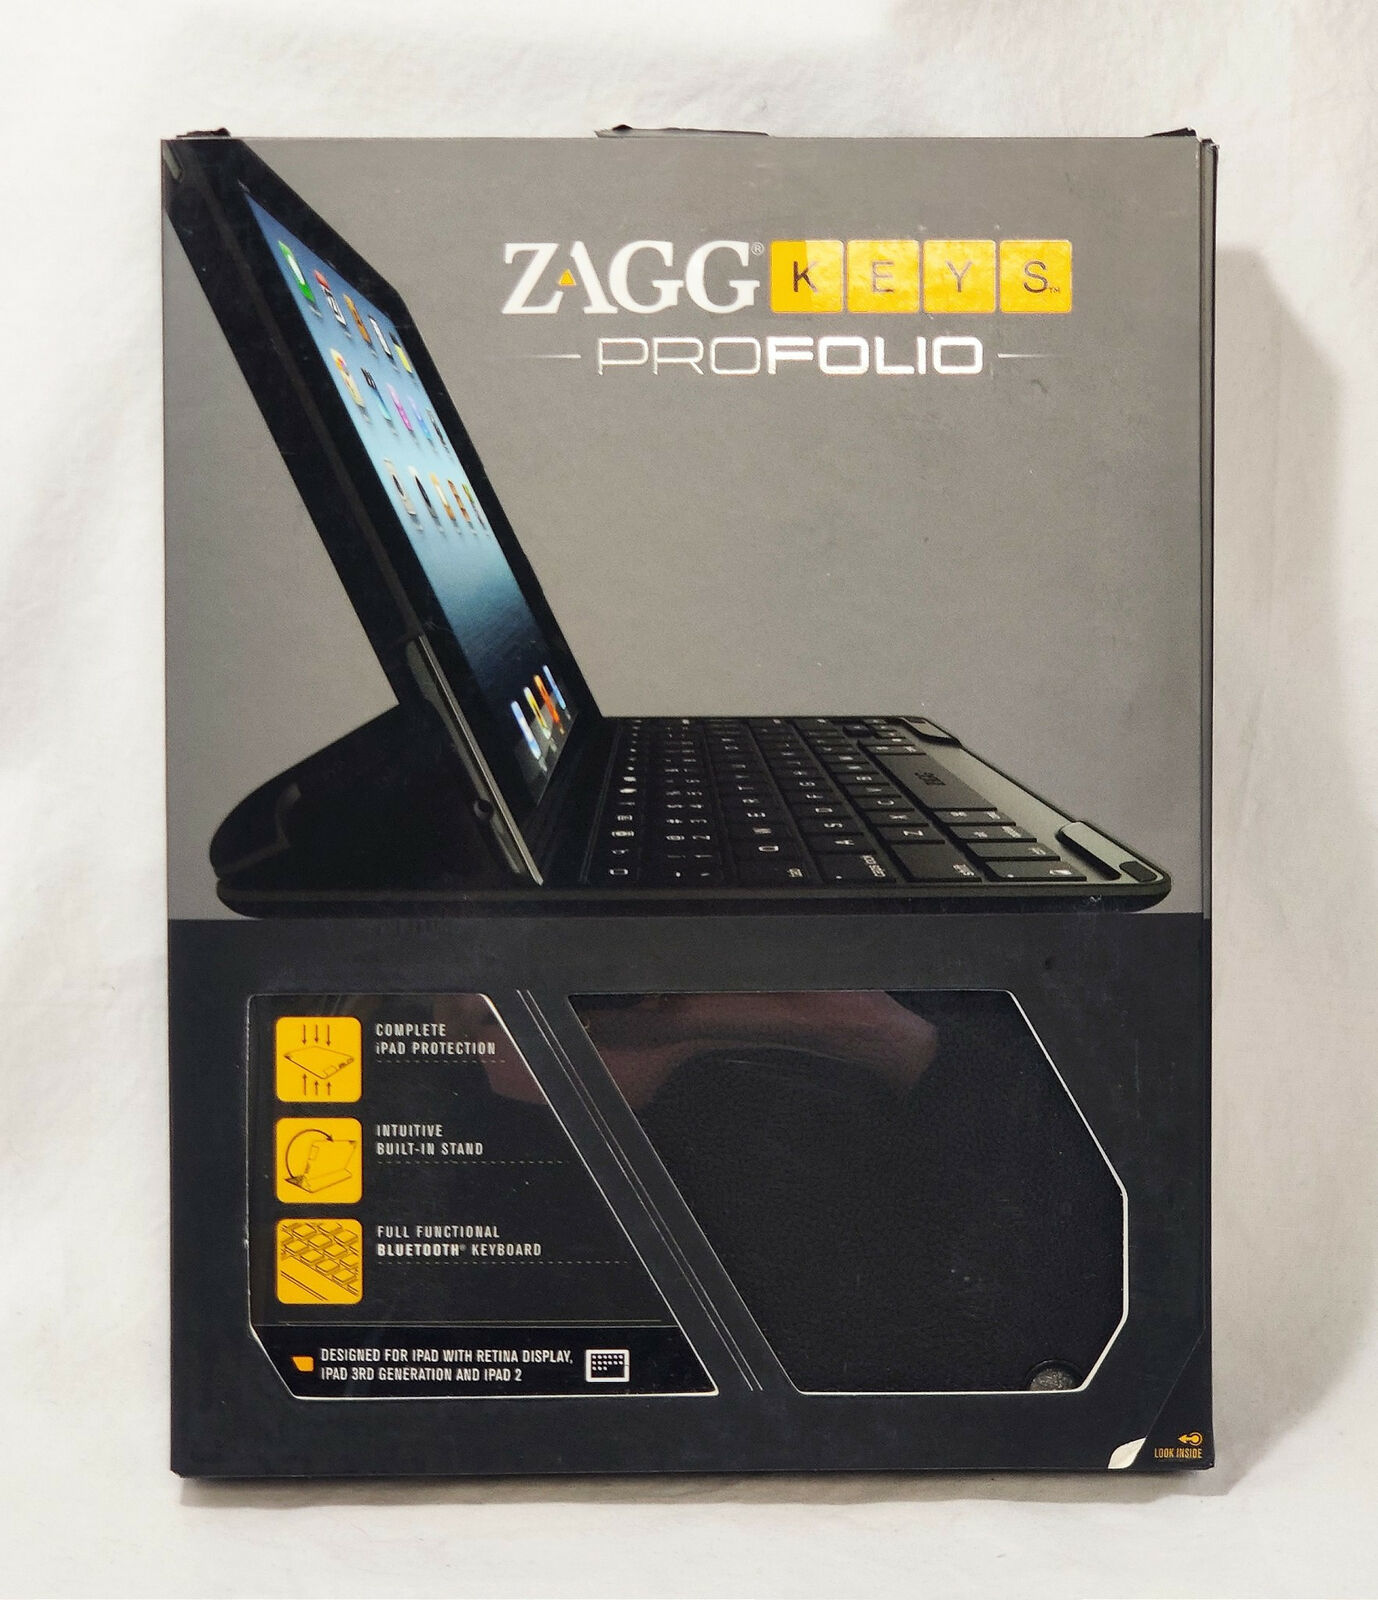 NEW ZaggKeys ProFolio BLACK Case Keyboard for Apple iPad 2 / 3 / 4 Gen zagg - $59.35